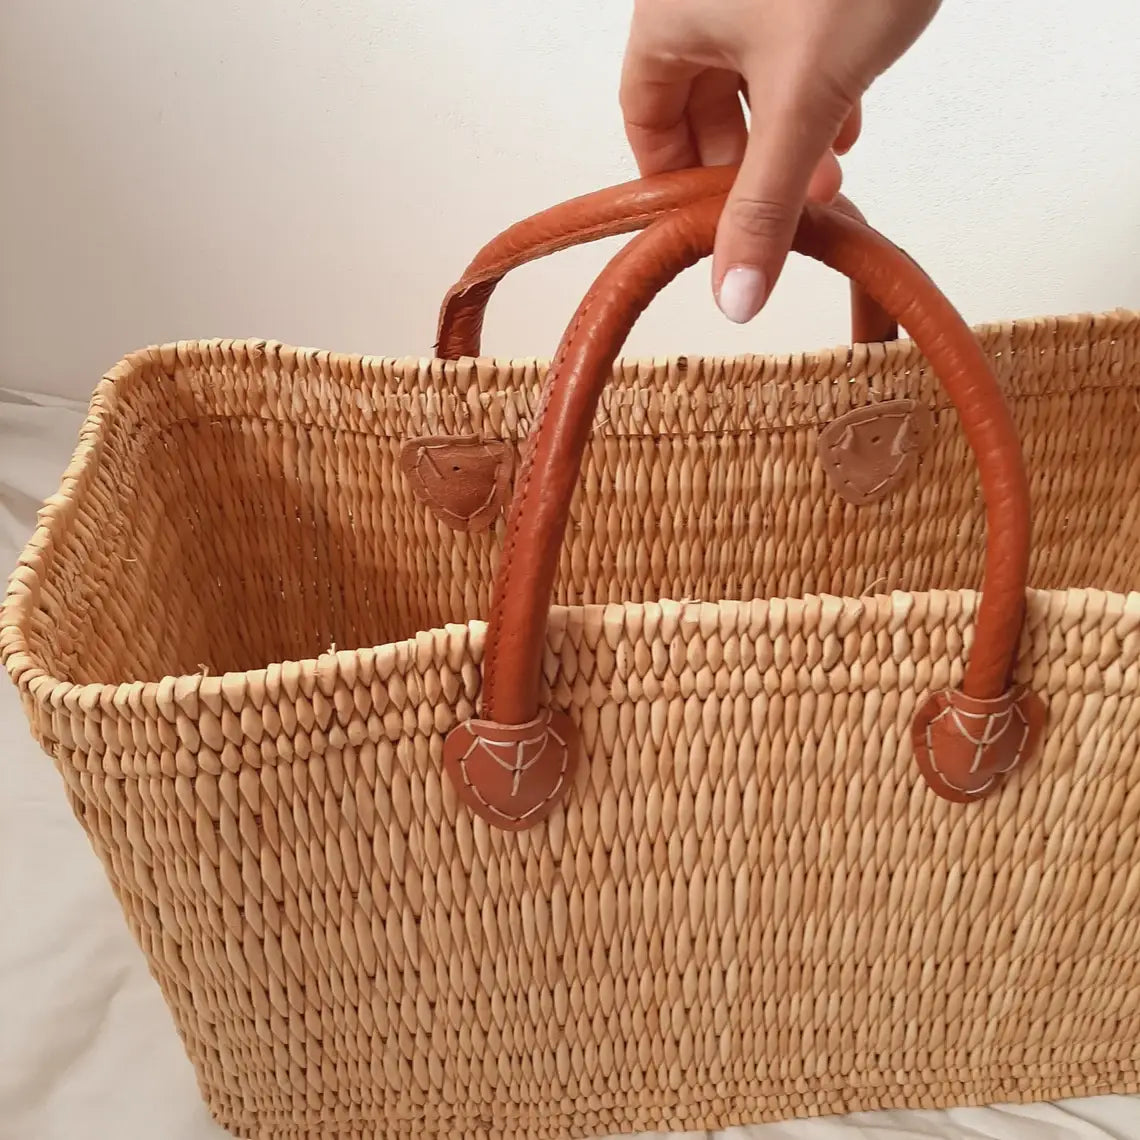 Straw Market Basket Bag